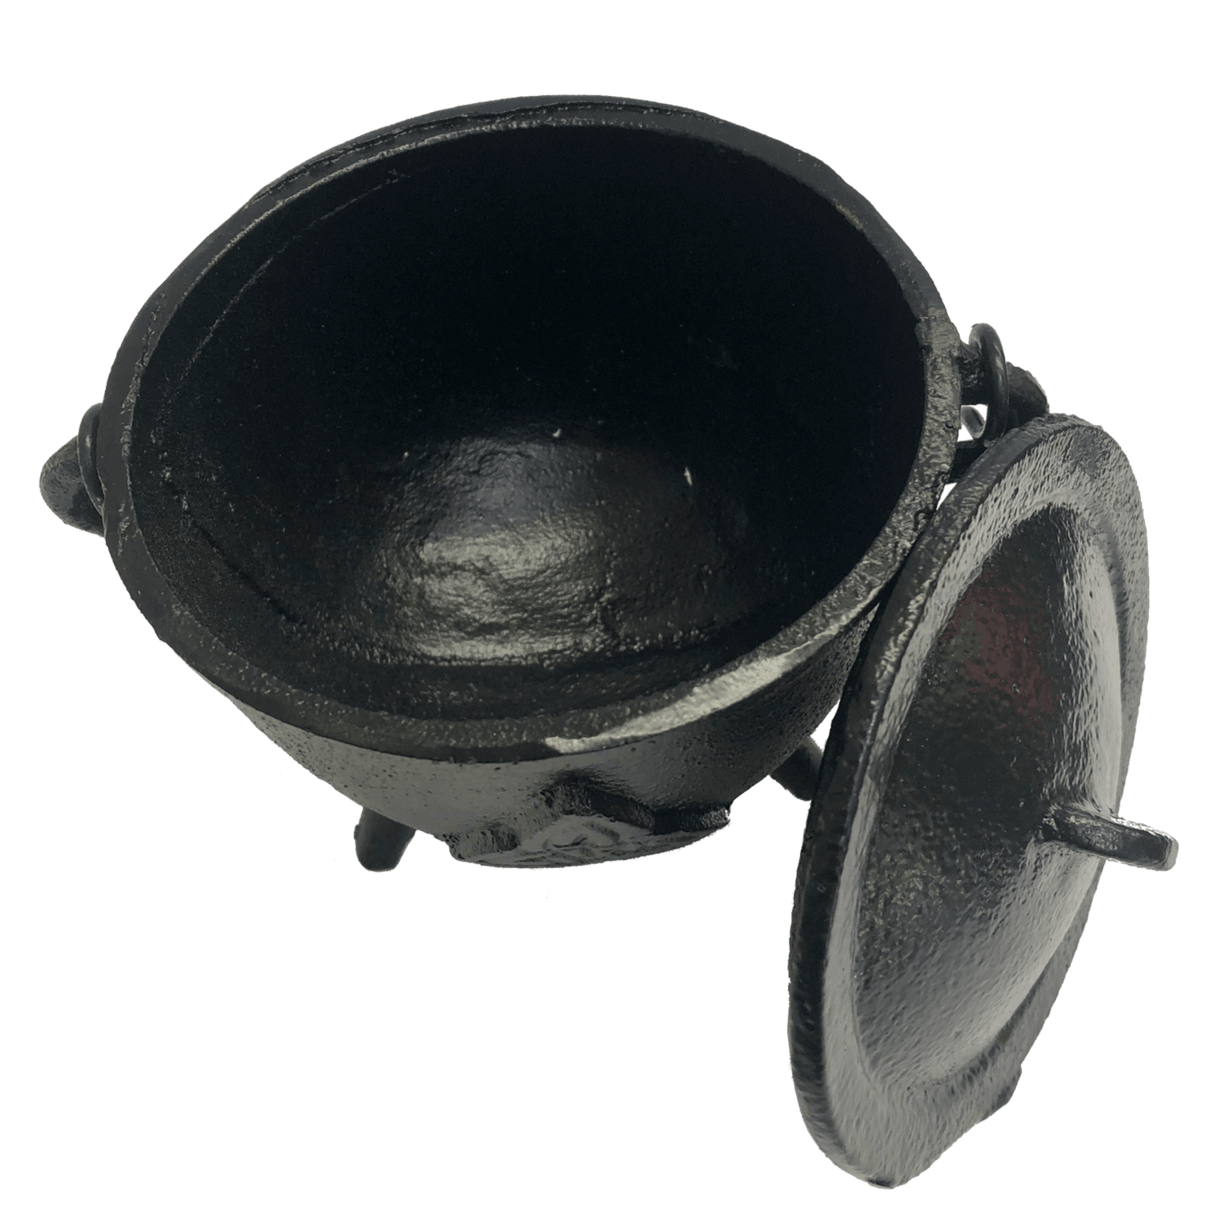 Cast Iron Cauldron with lid - large 11cm Triquetra design - Nature's Magick